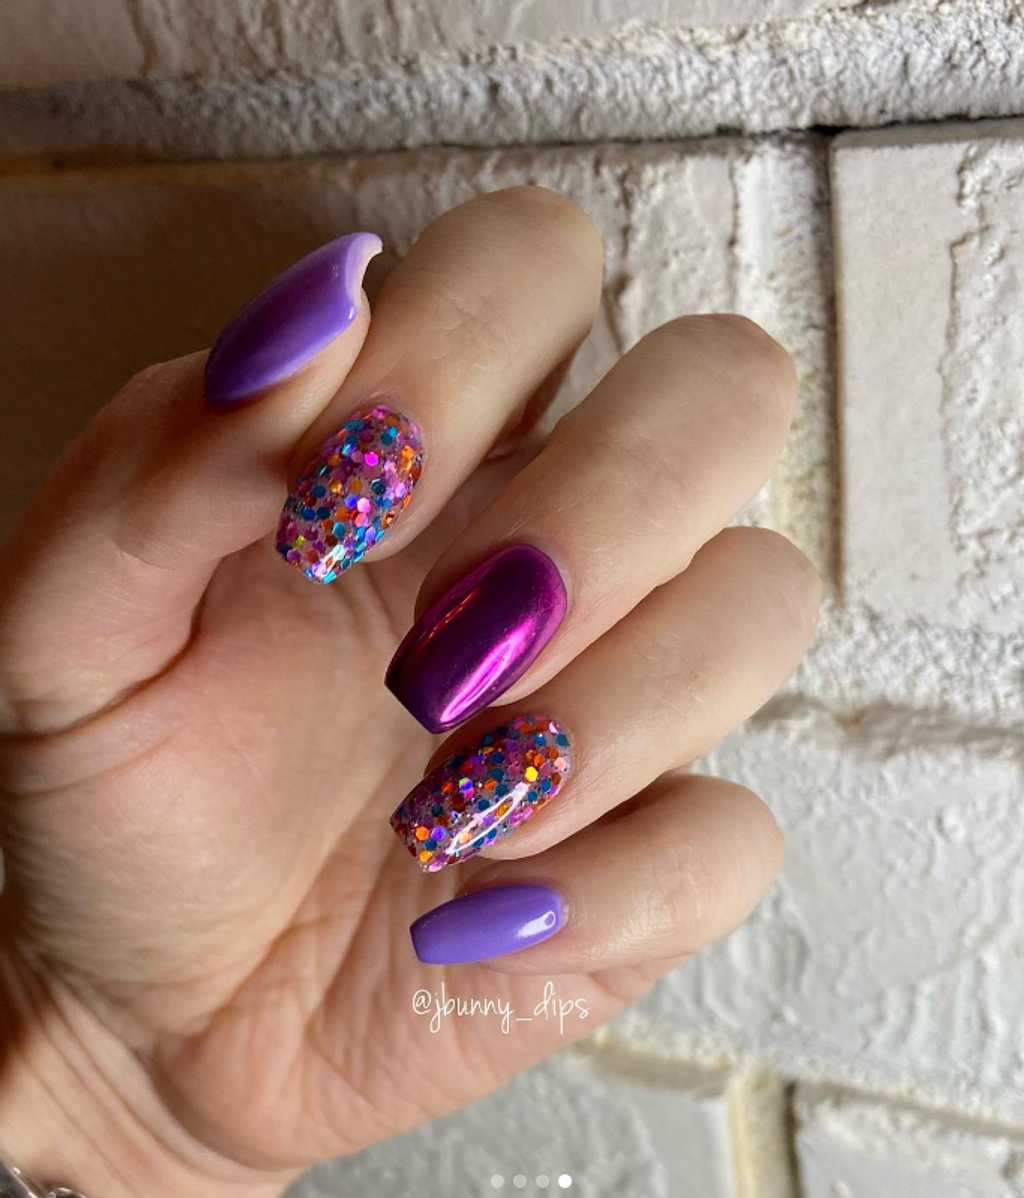 Diseño de uñas en tonos lilas. FUENTE: @jbunny_dips